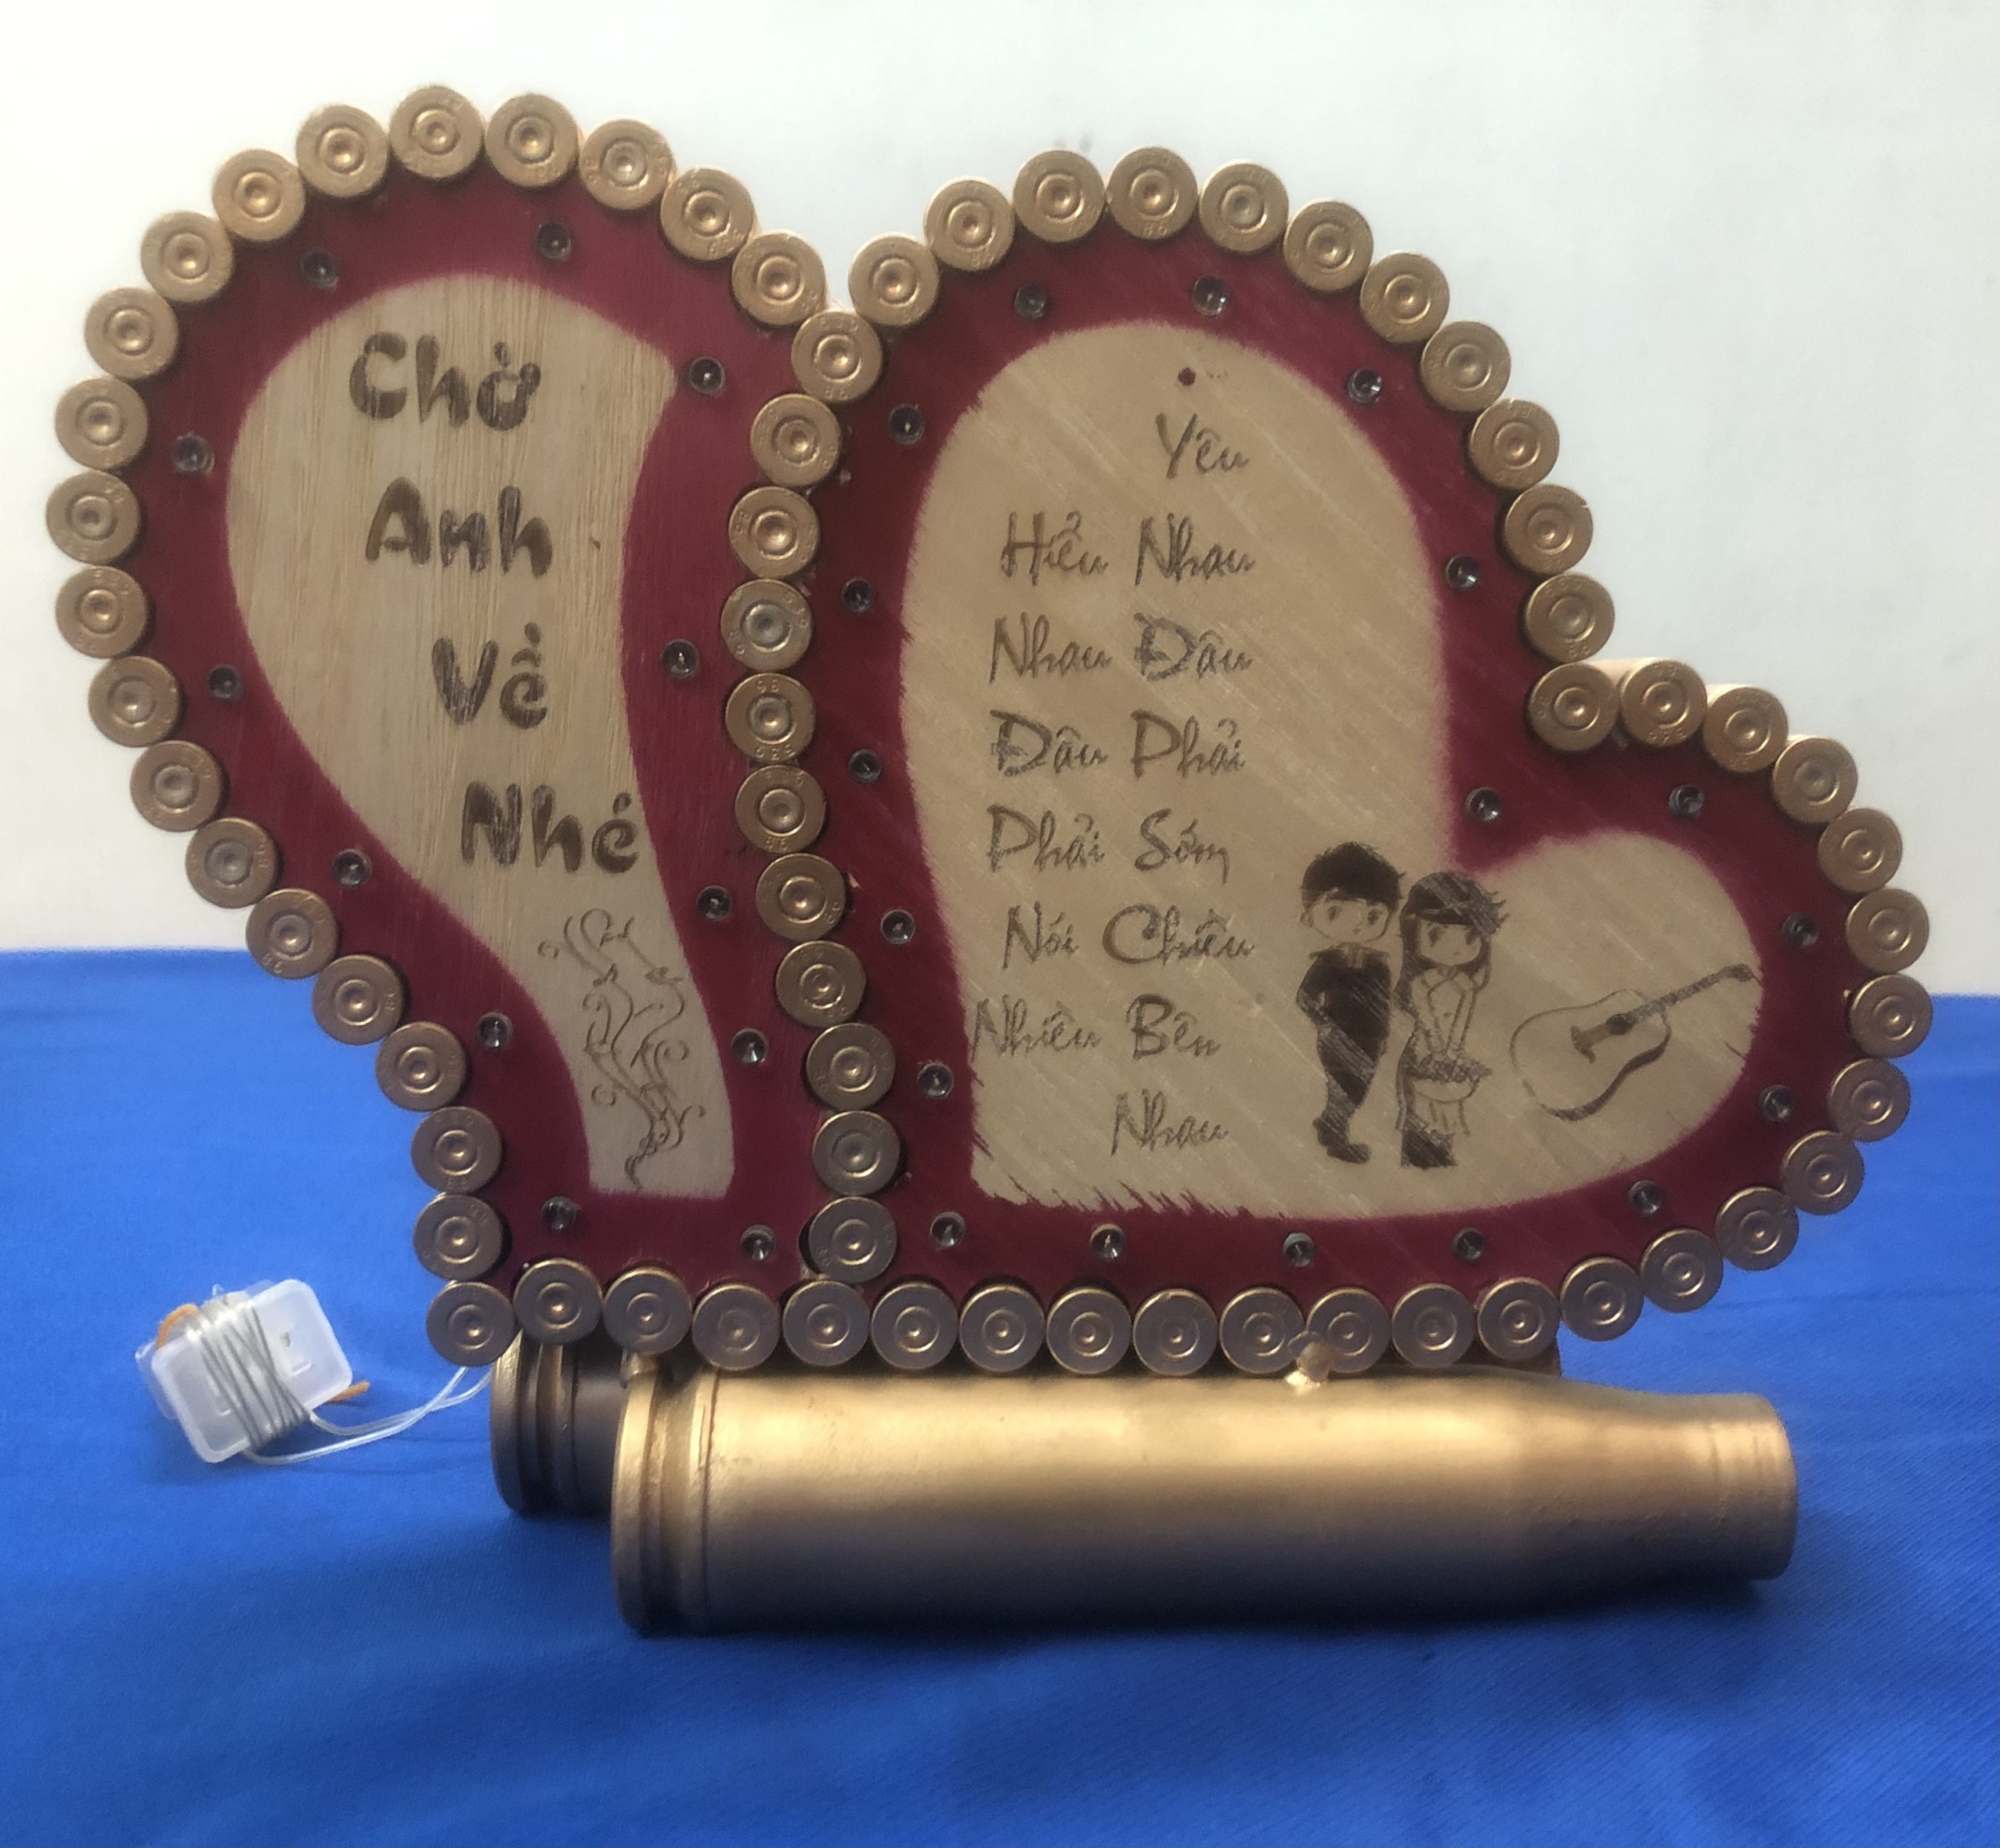 Mô hình vỏ đạn trái tim khắc chữ và có đèn led, tặng kèm 1 móc khóa vỏ đạn